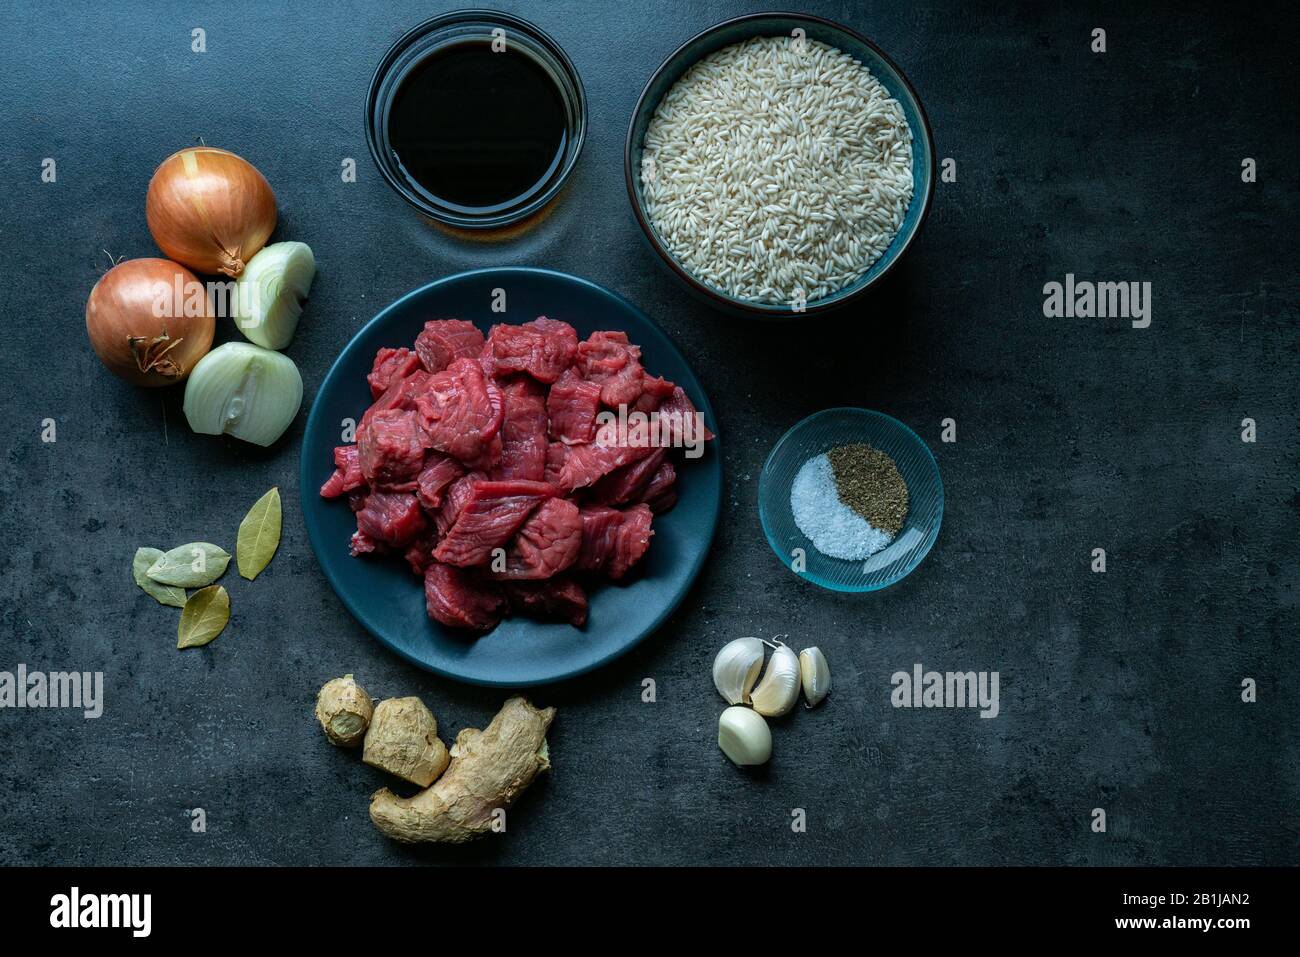 Vue de dessus des ingrédients alimentaires, avec viande, ingrédients et boeuf au fond sombre, ingrédients indonésiens. Préparation de nourriture Banque D'Images